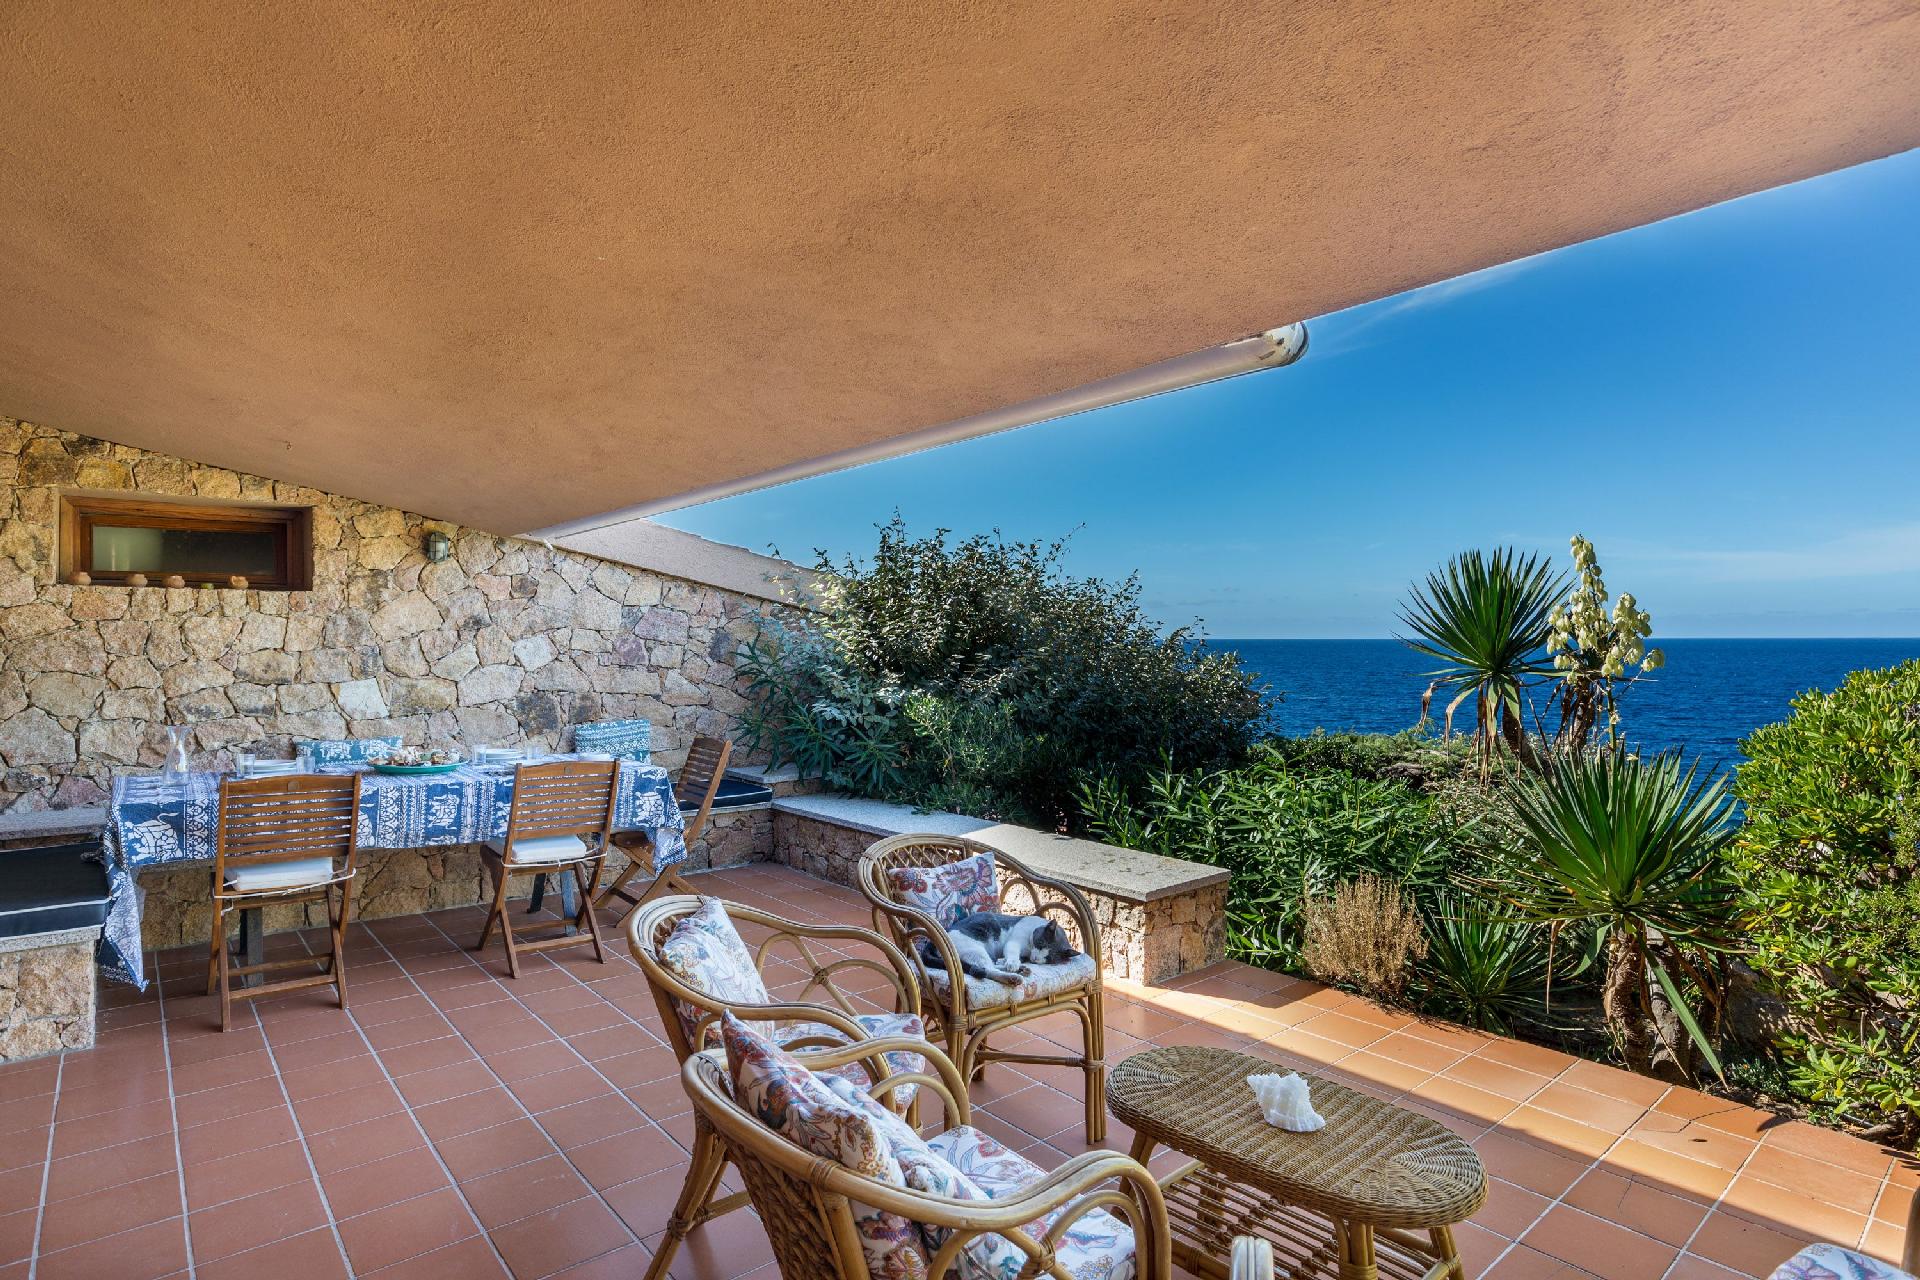 Appartement in Costa Paradiso mit Grill, Garten un Ferienhaus in Italien